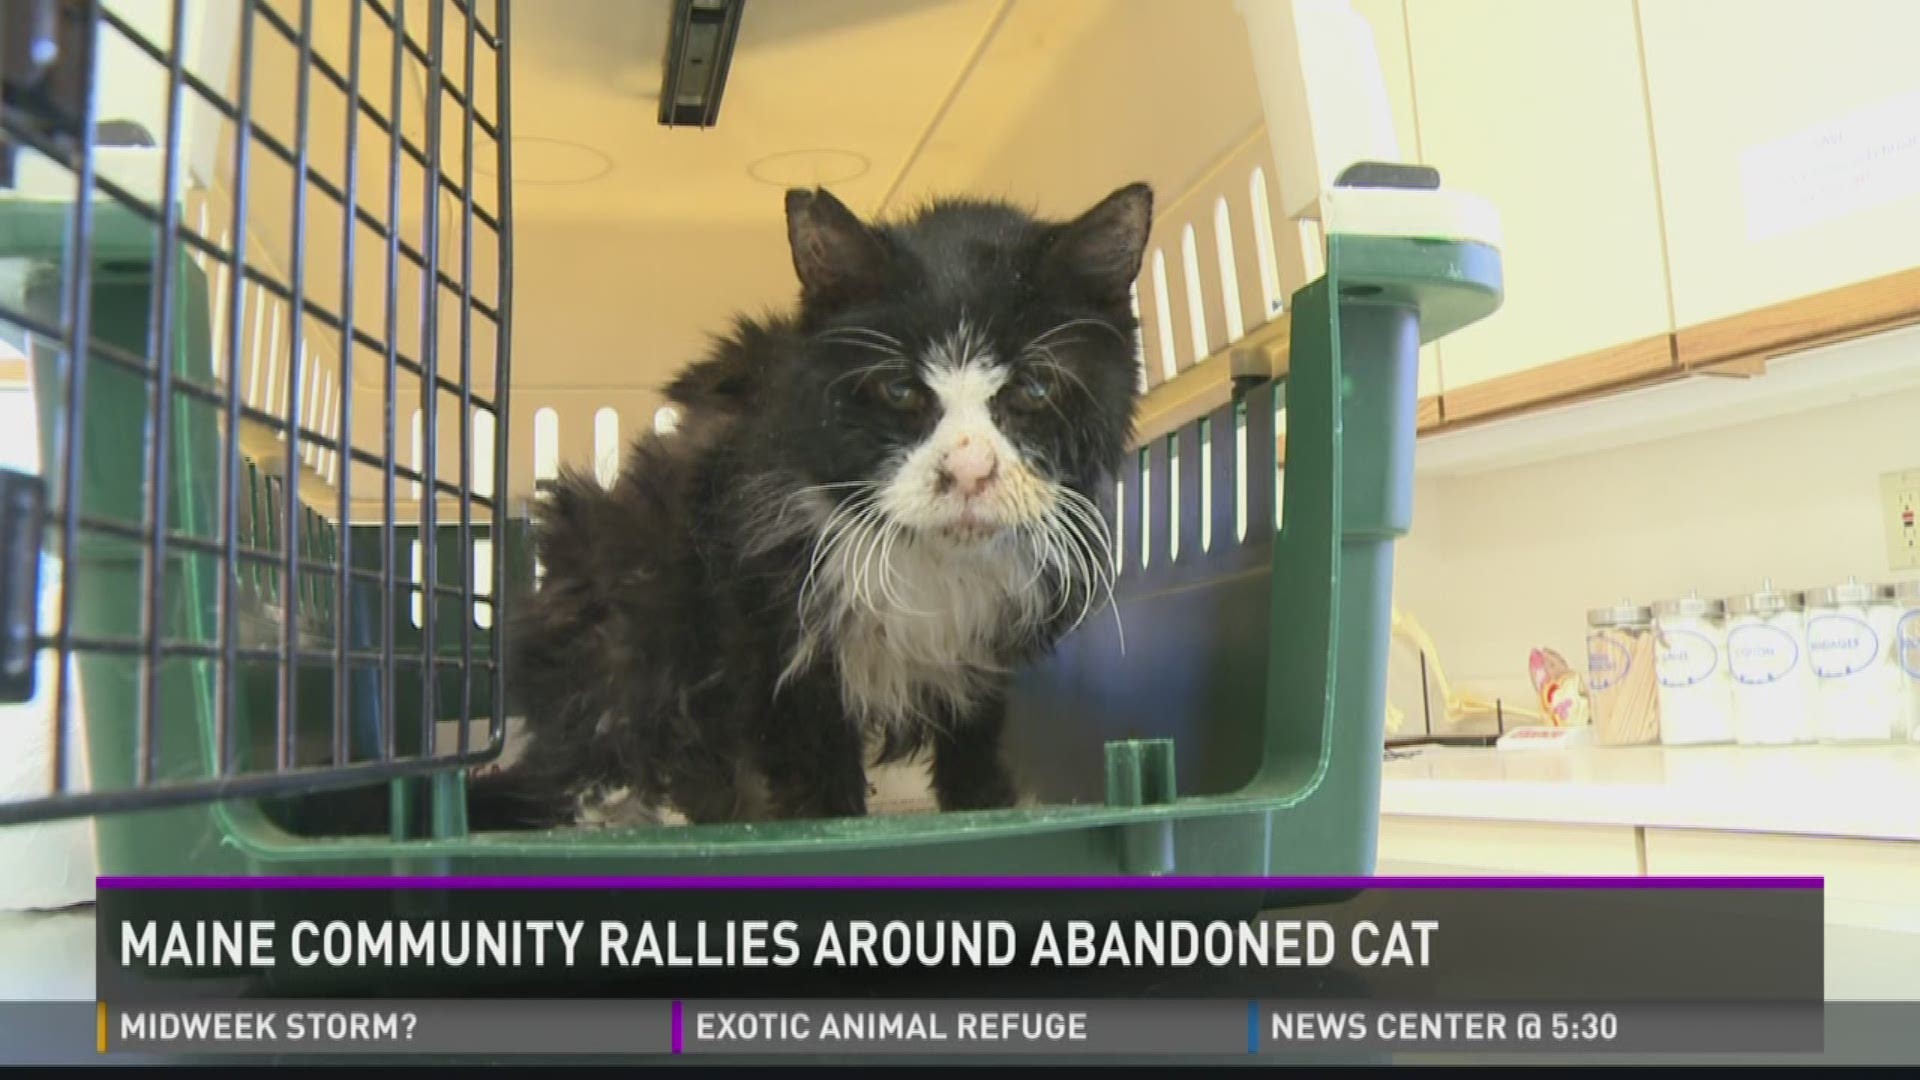 Community rallies around cat